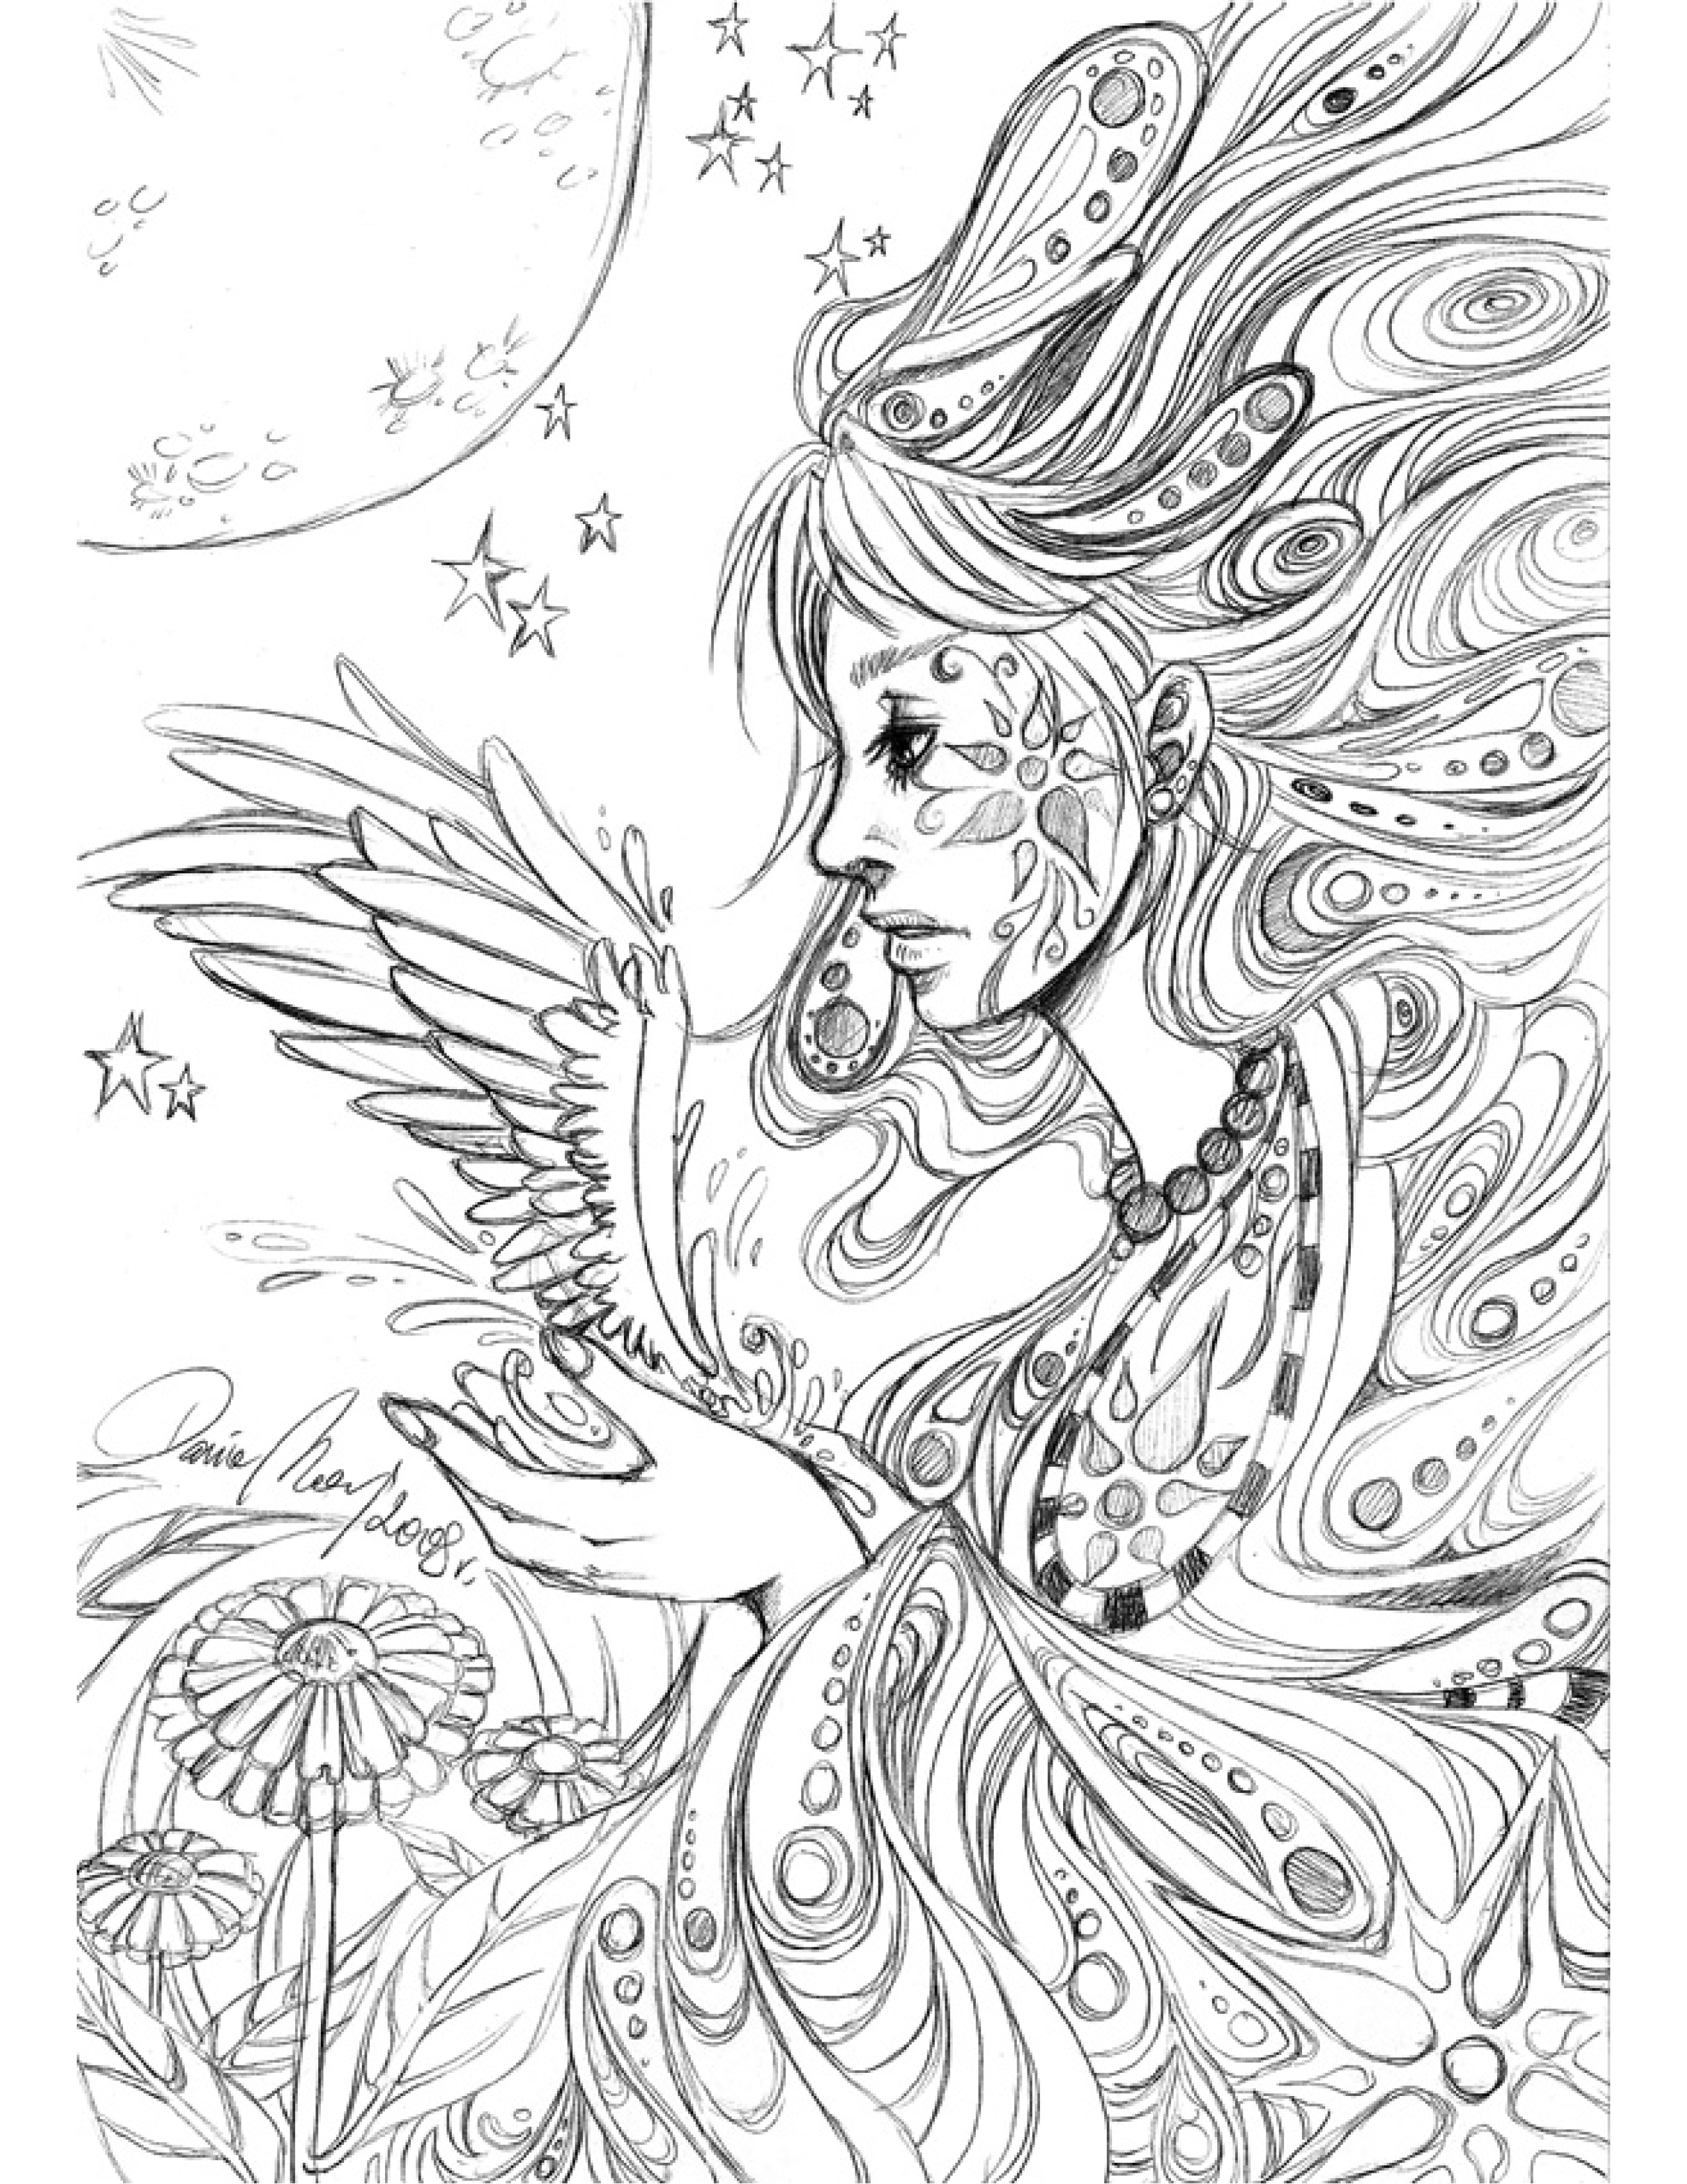 Sketch personnage ange coloriage pour imprimer par Dar Chan